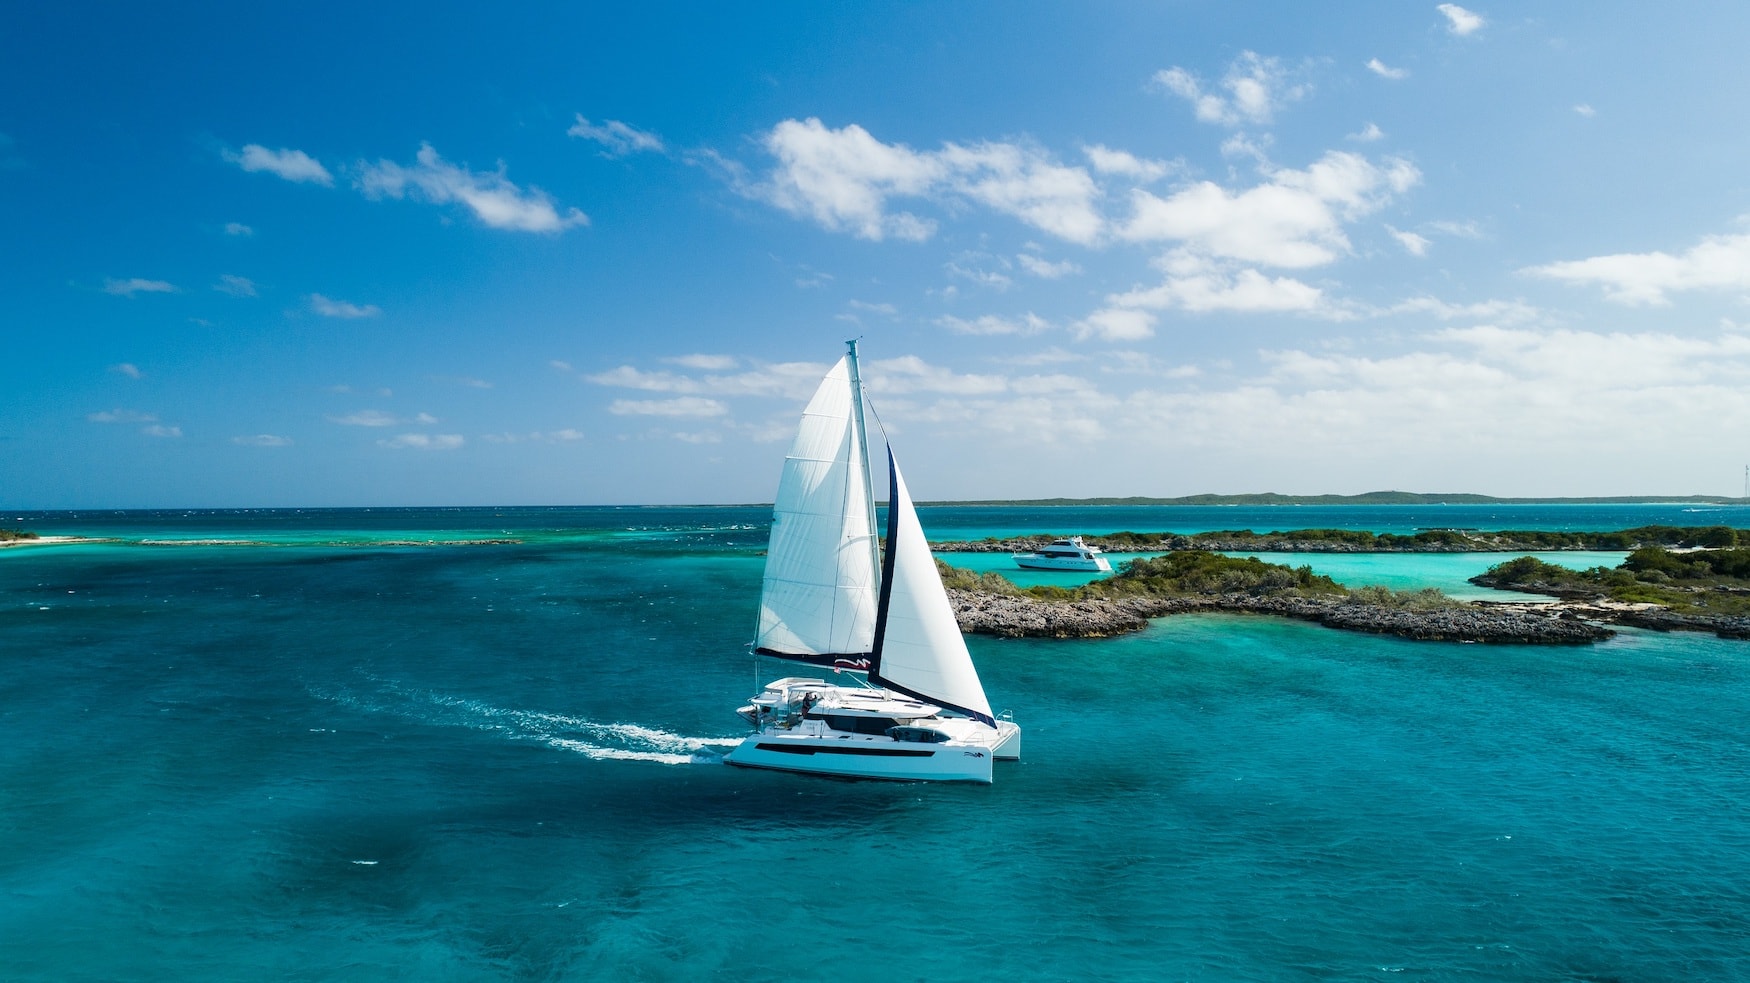 The Moorings Segel- und Motoryacht im Bahamas Archipel